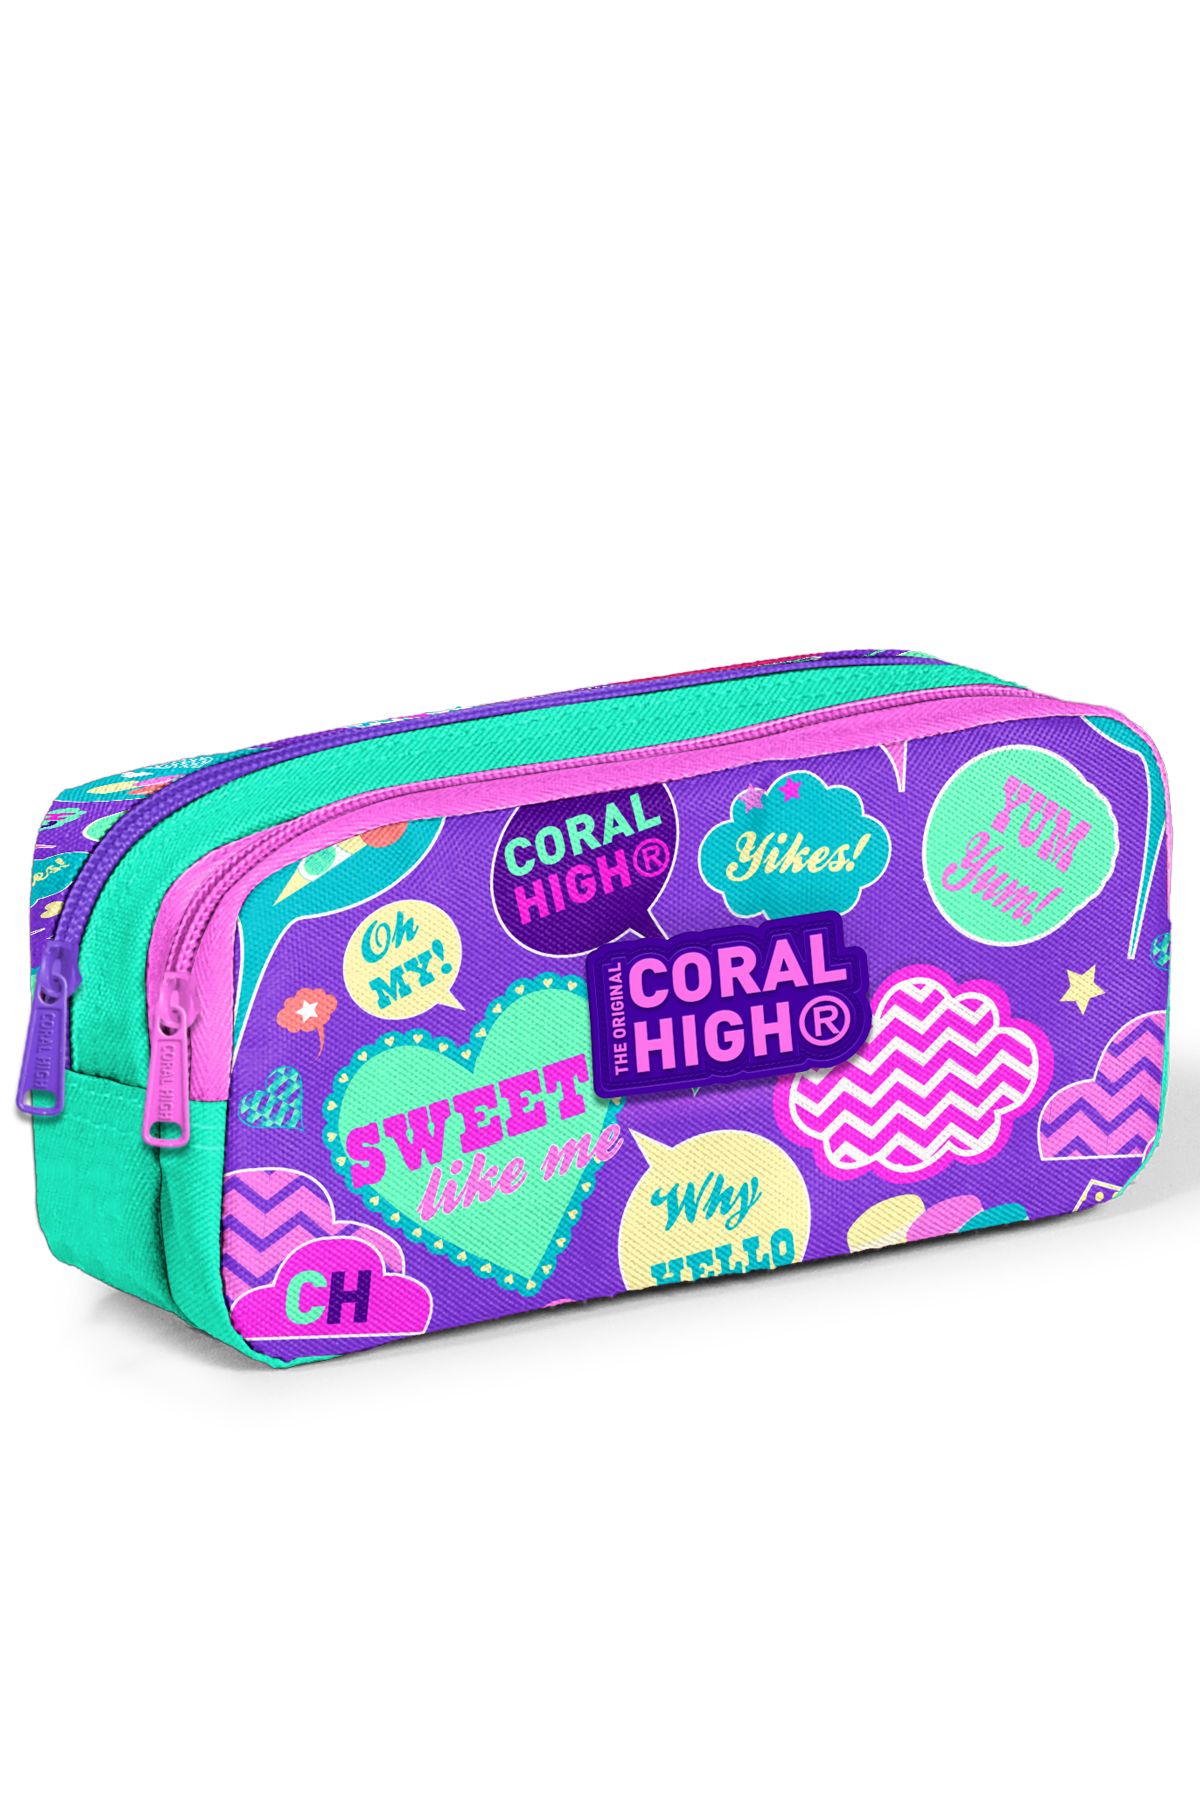 Coral High Kids Su Yeşili Mor Desenli Iki Bölmeli Kalem Çantası 22159